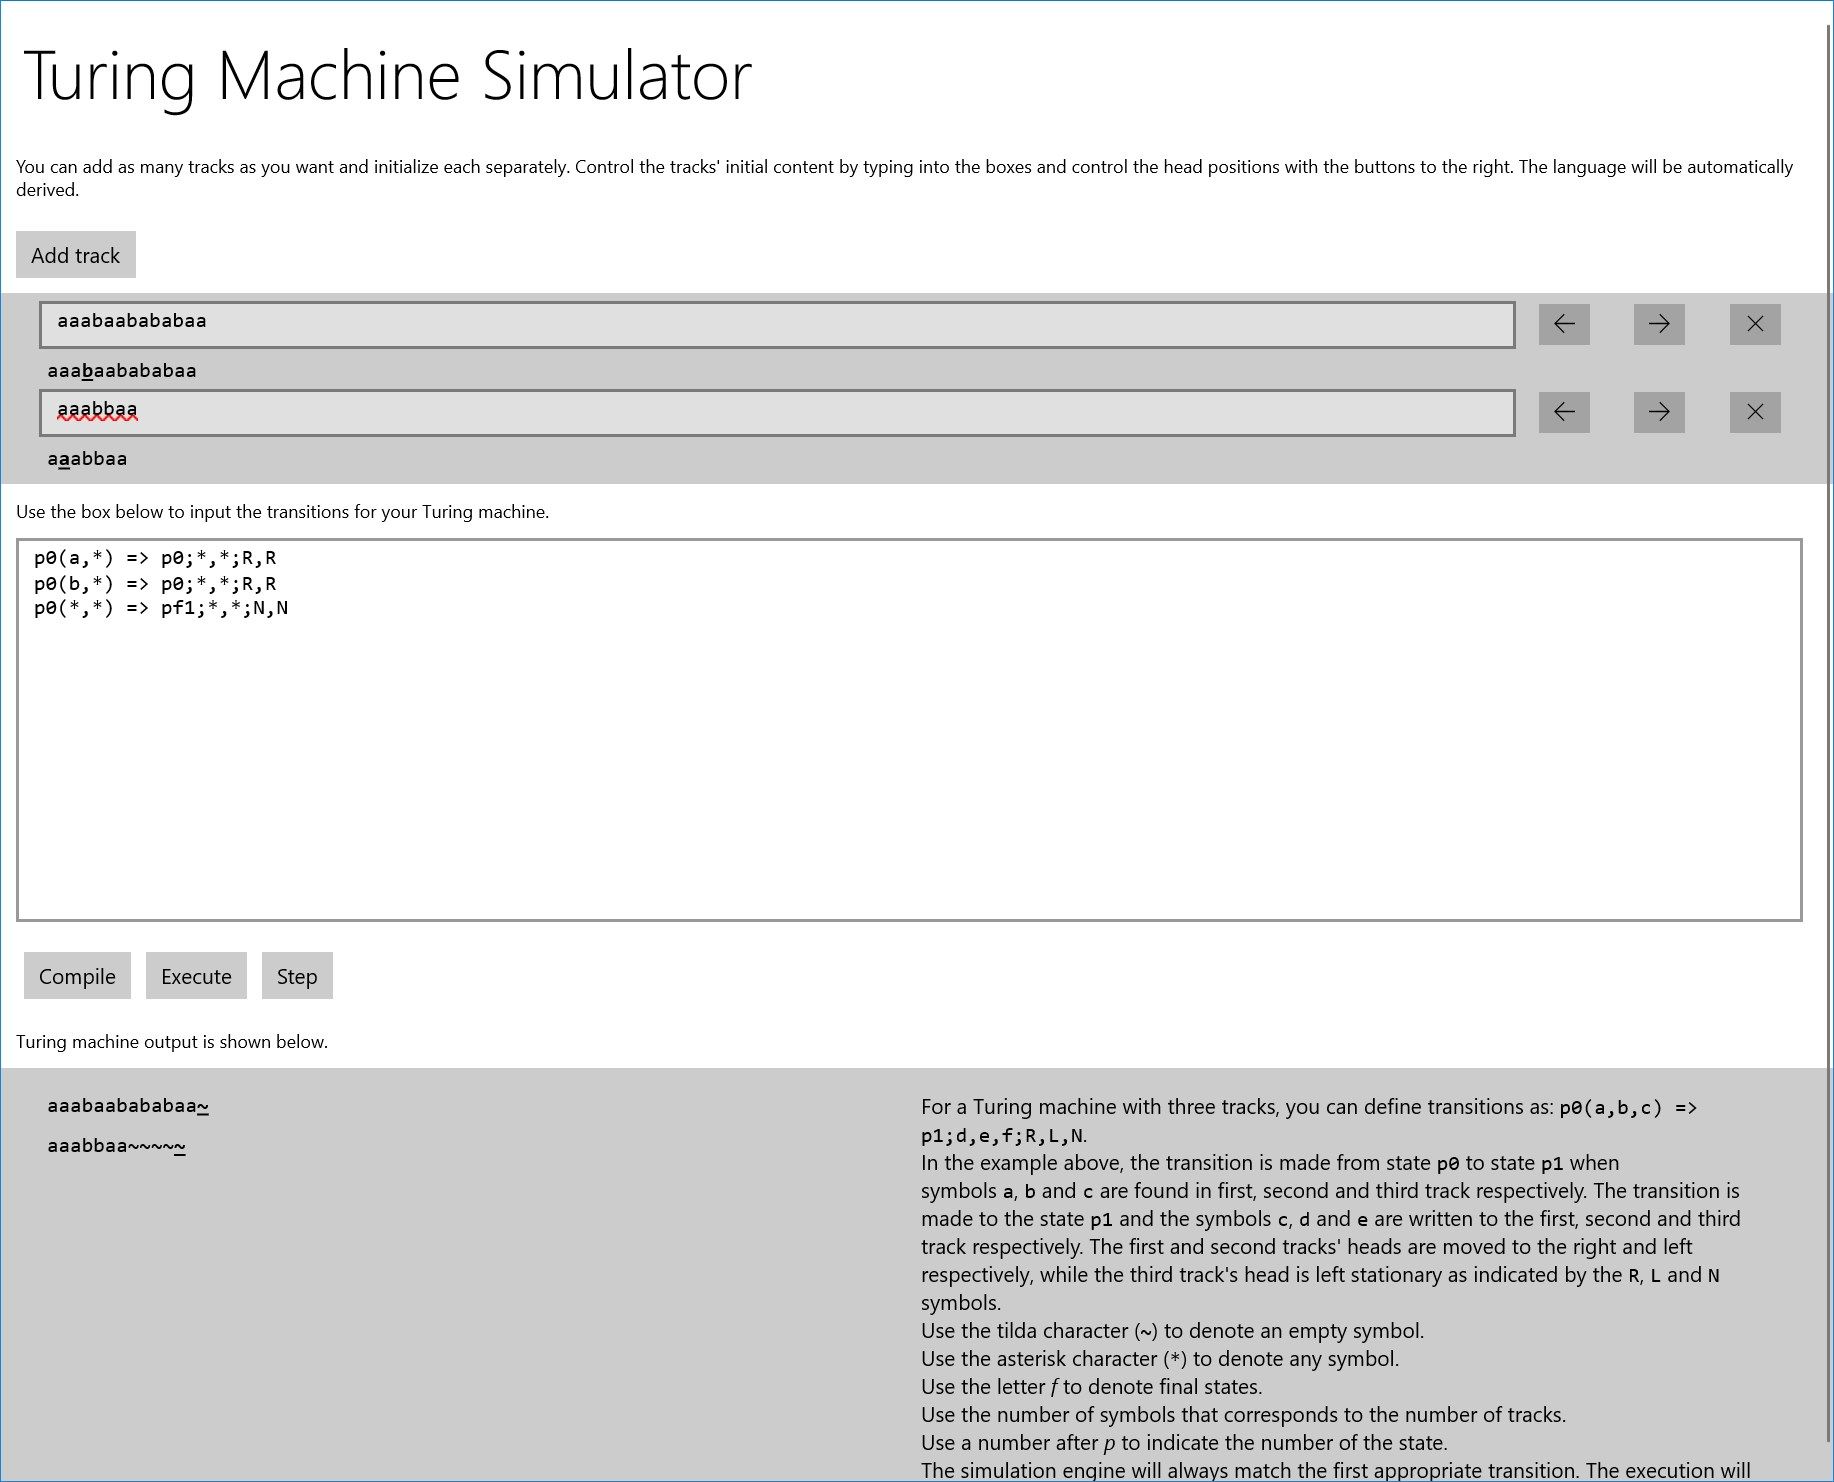 Turing Machine Simulator